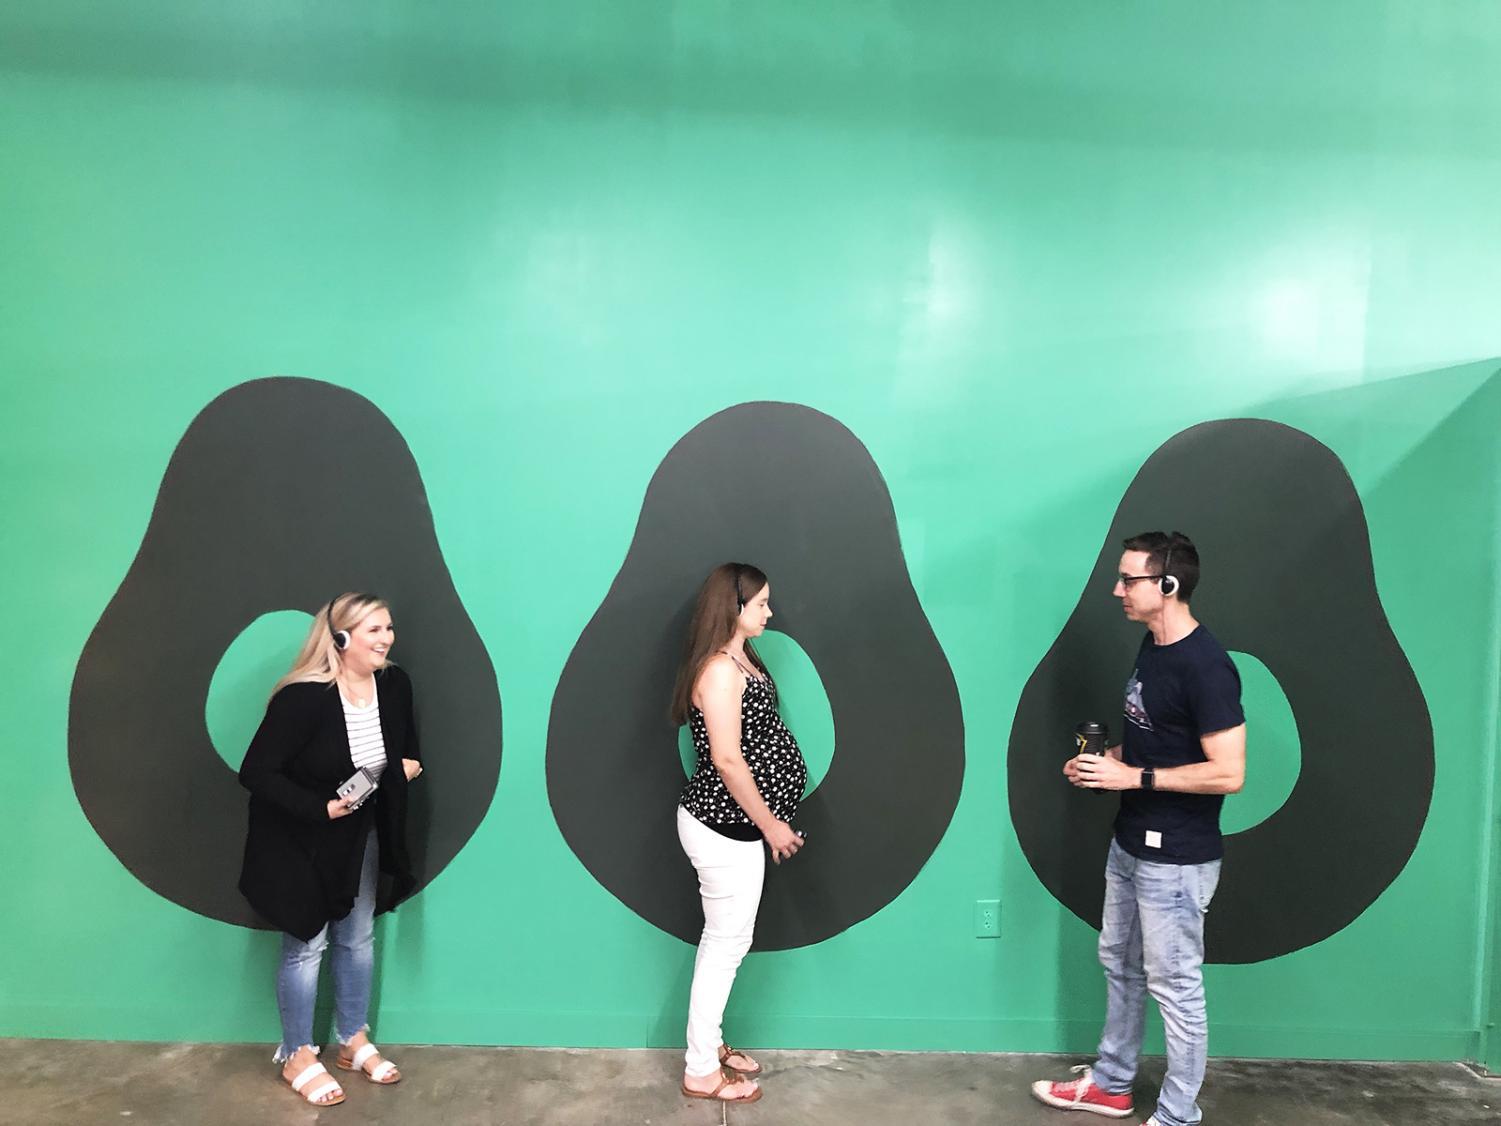 San+Marcos+pop-up+museum+celebrates+the+California+avocado